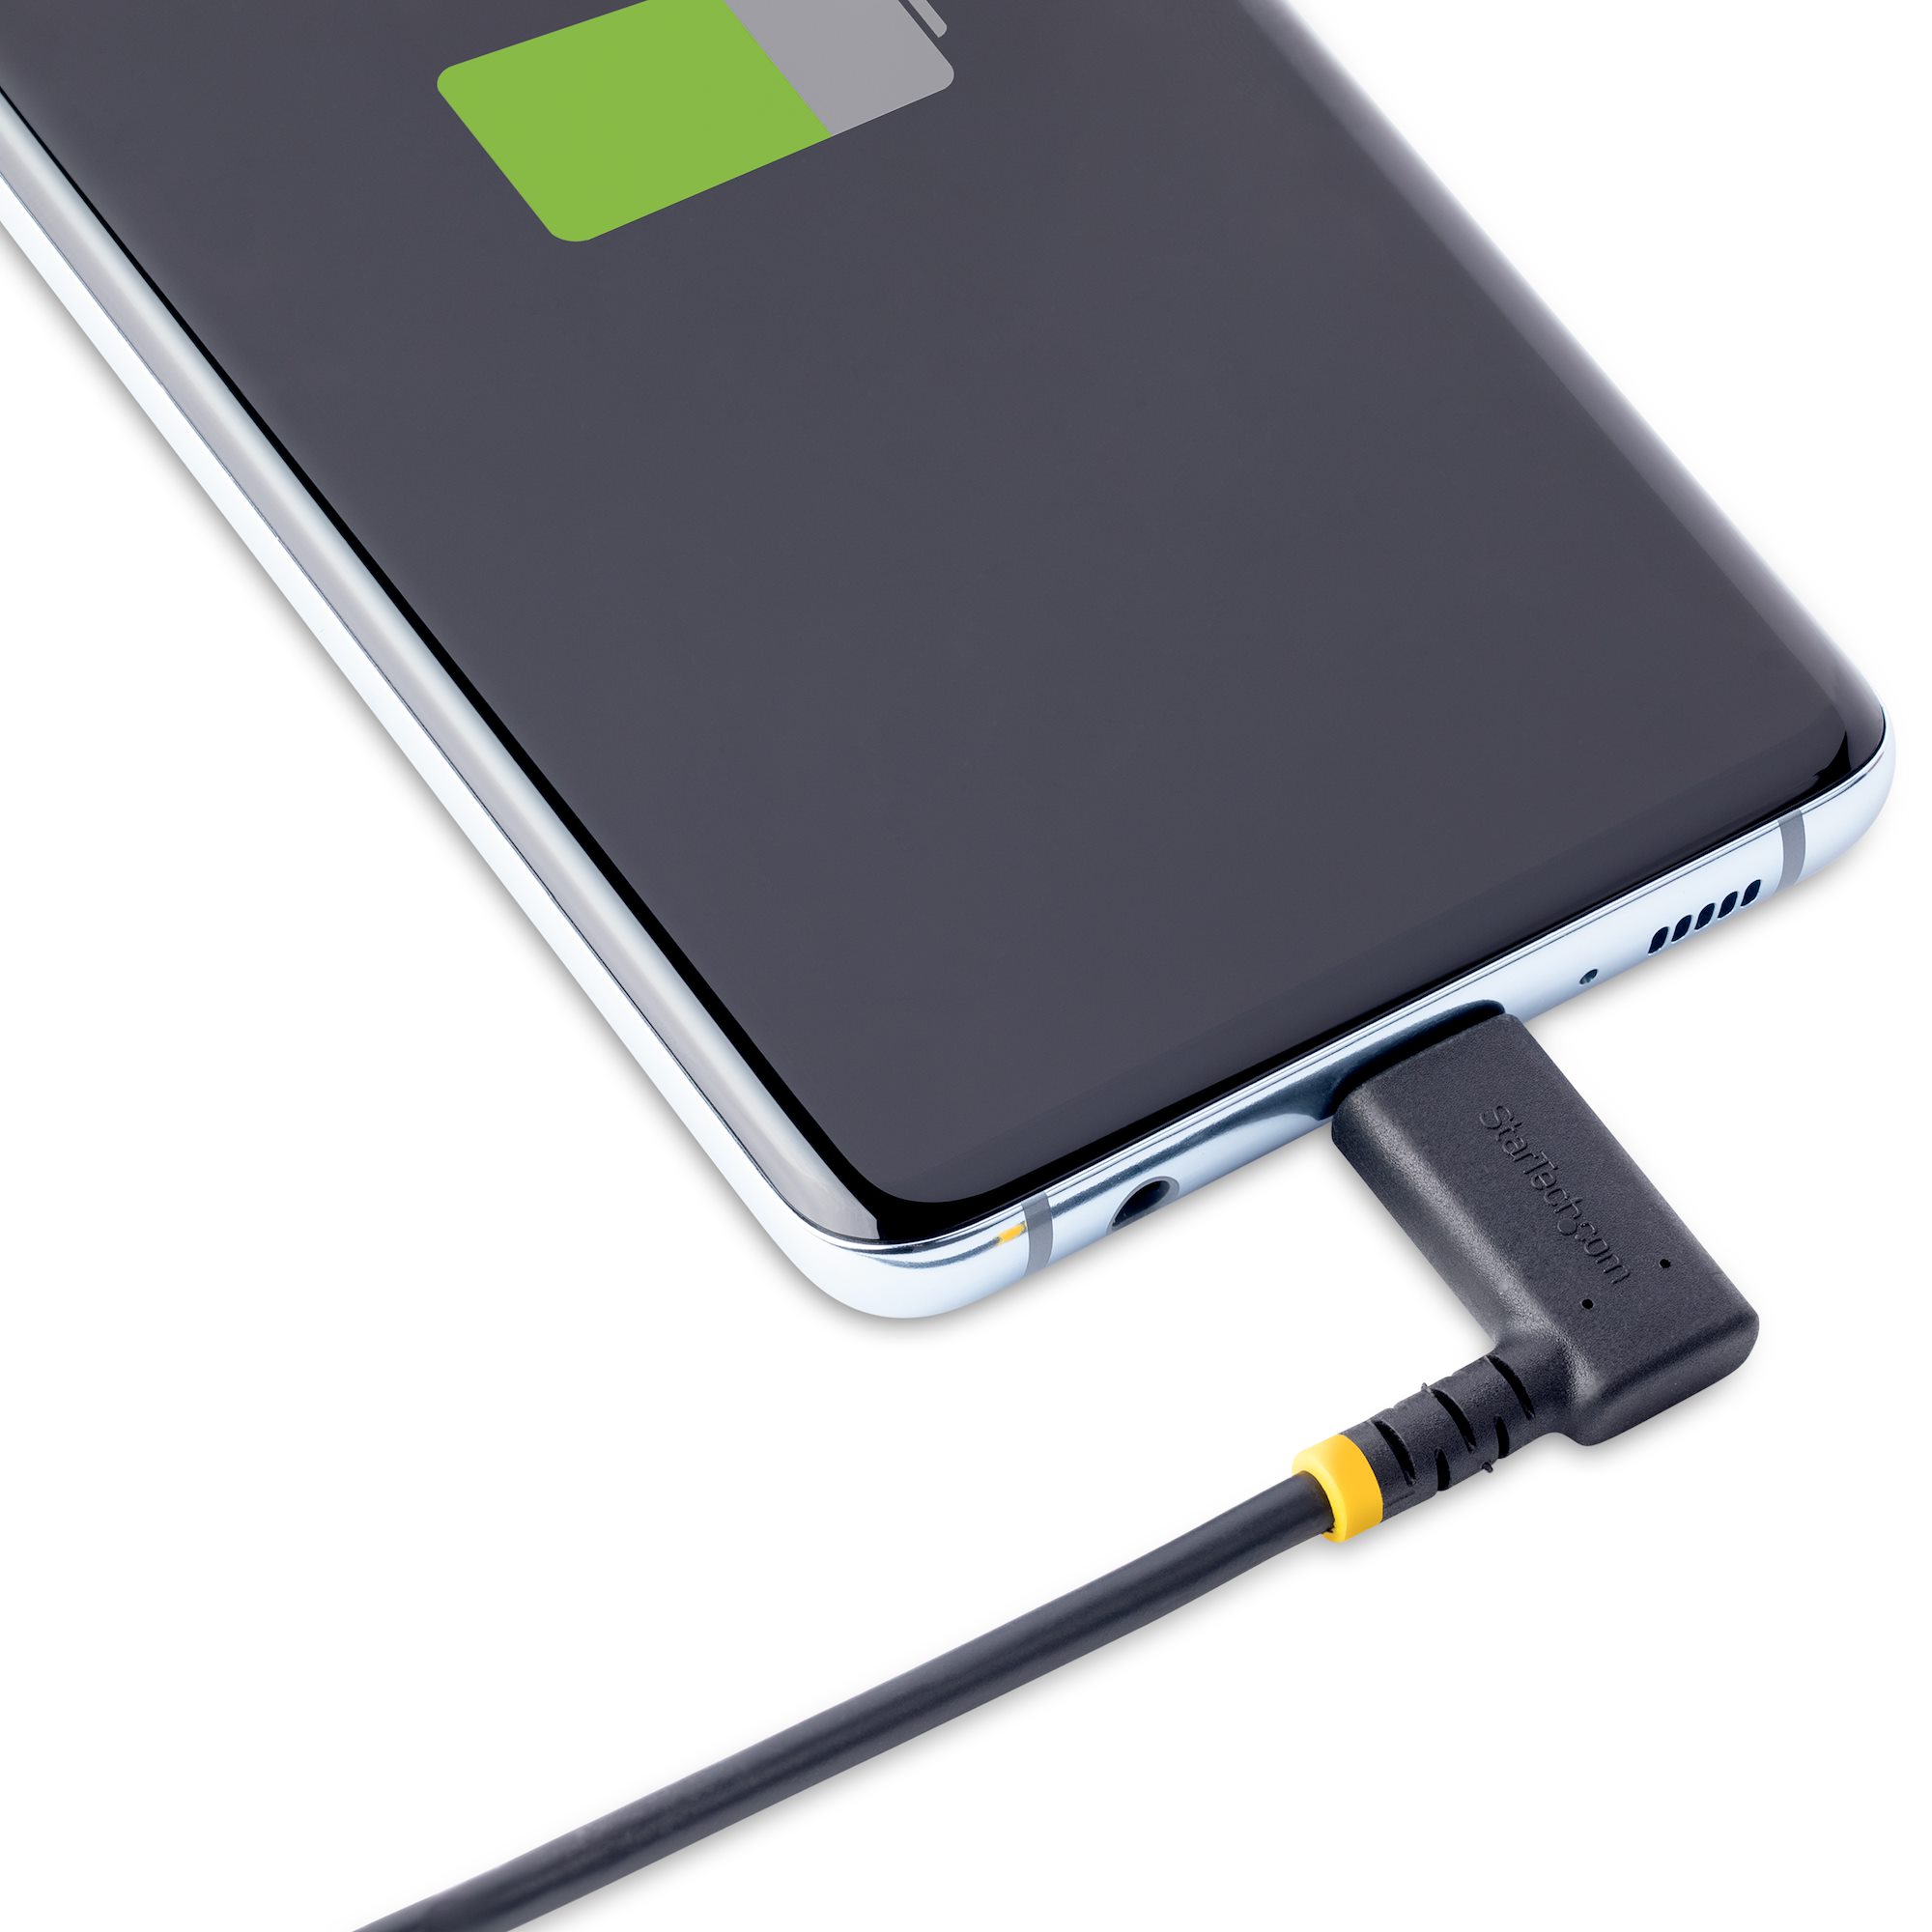 Câble chargeur iPhone 30 CM - Extra court - Câble Lightning USB C -  Chargeur rapide